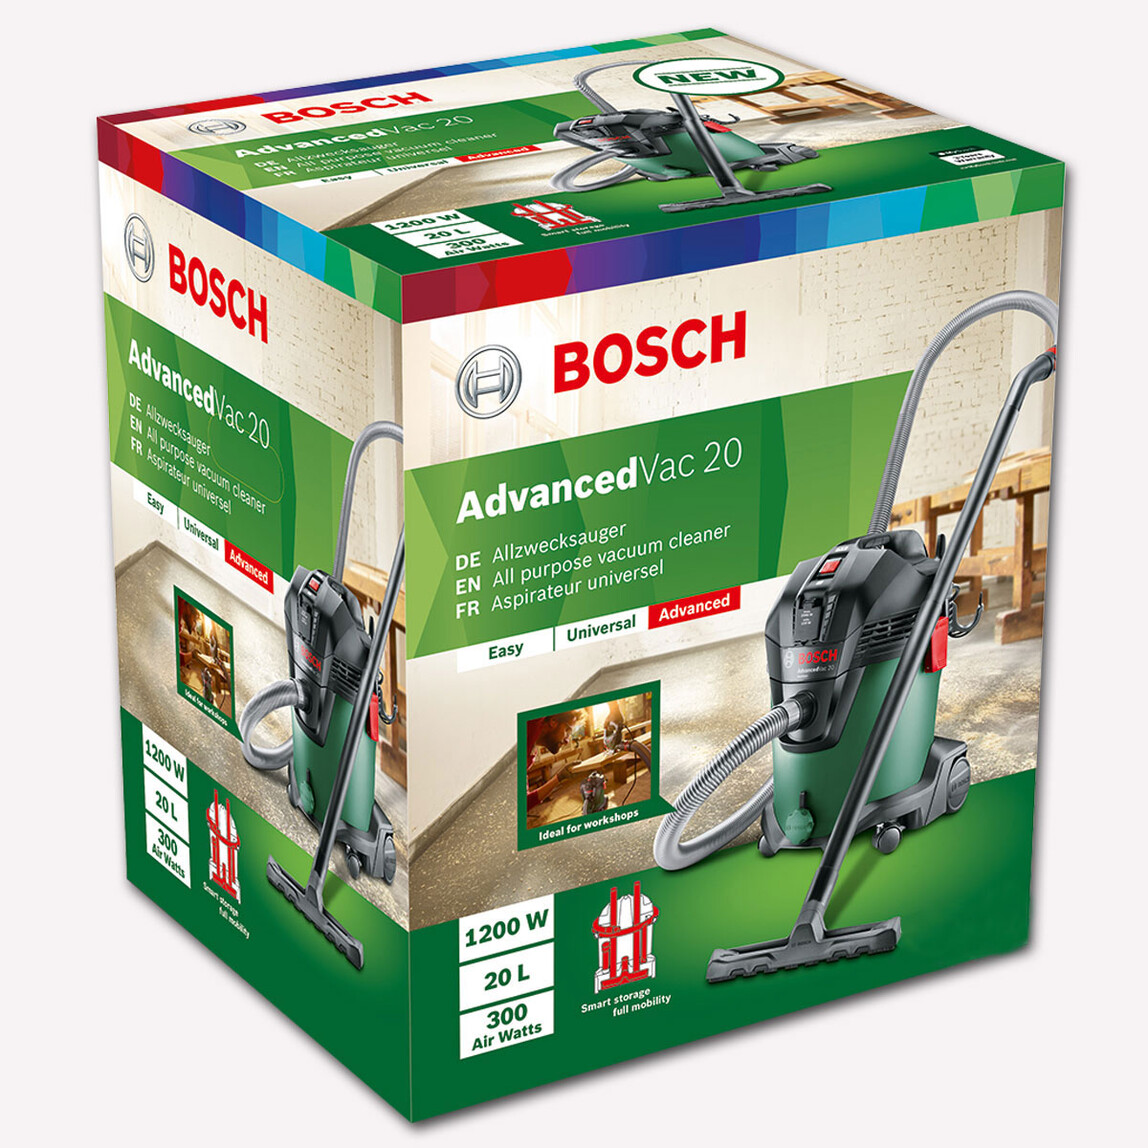    Bosch Advanced Vac 1200 W Islak-Kuru Elektrikli Süpürge   